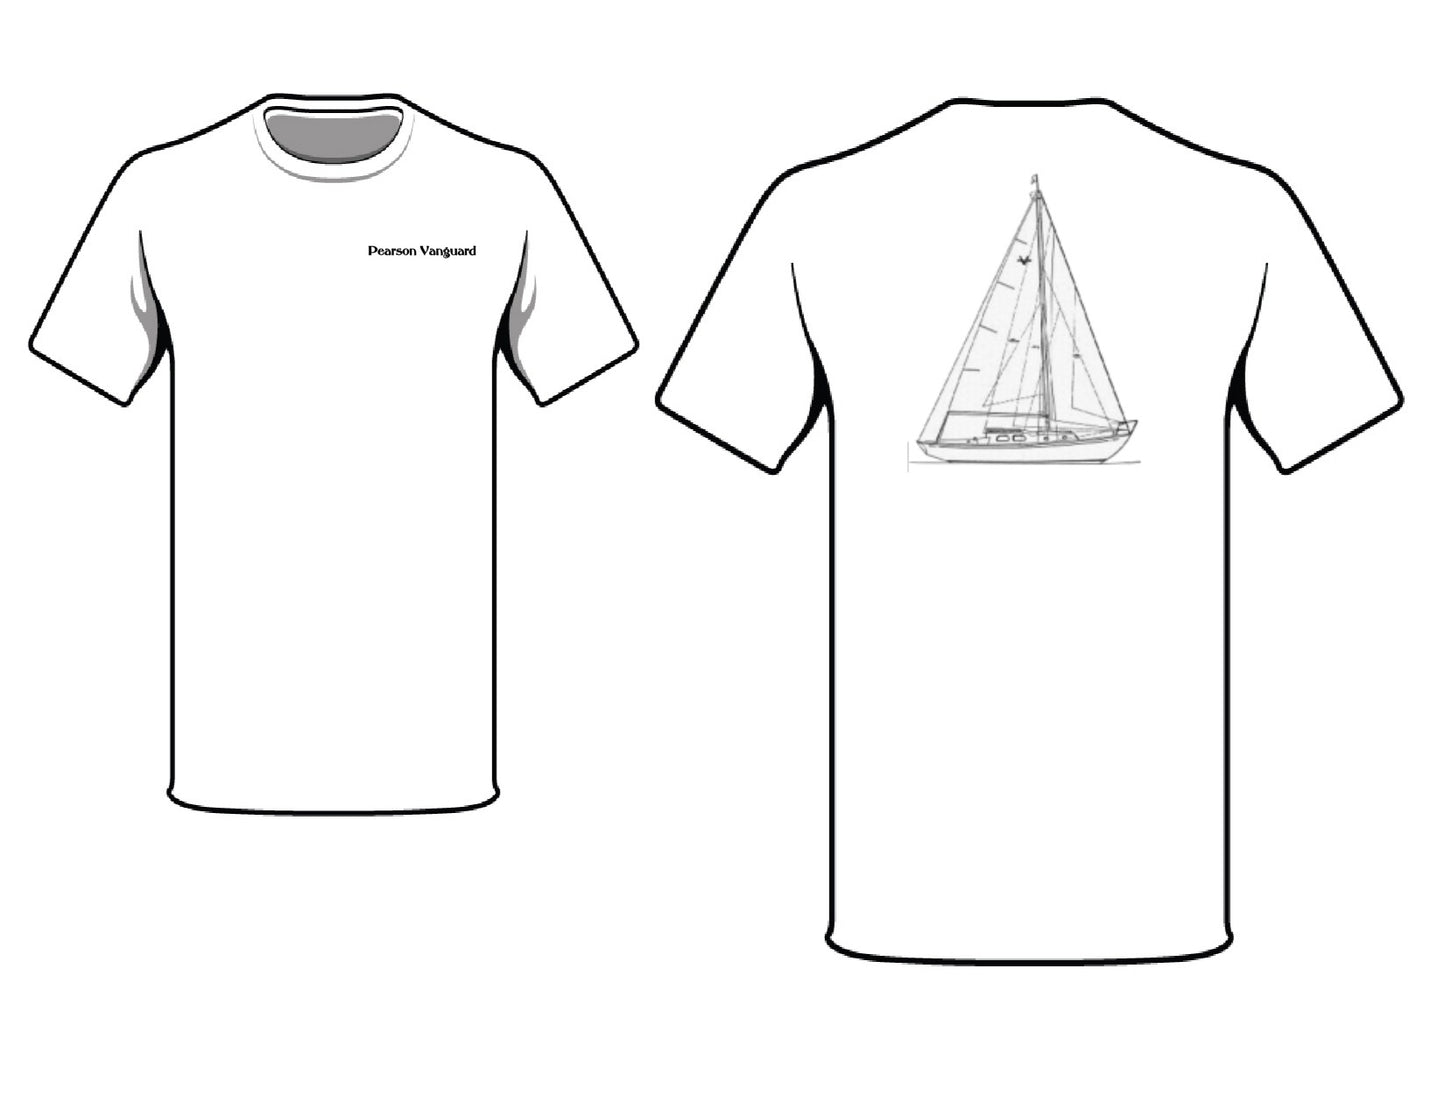 Pearson Vanguard T-Shirt